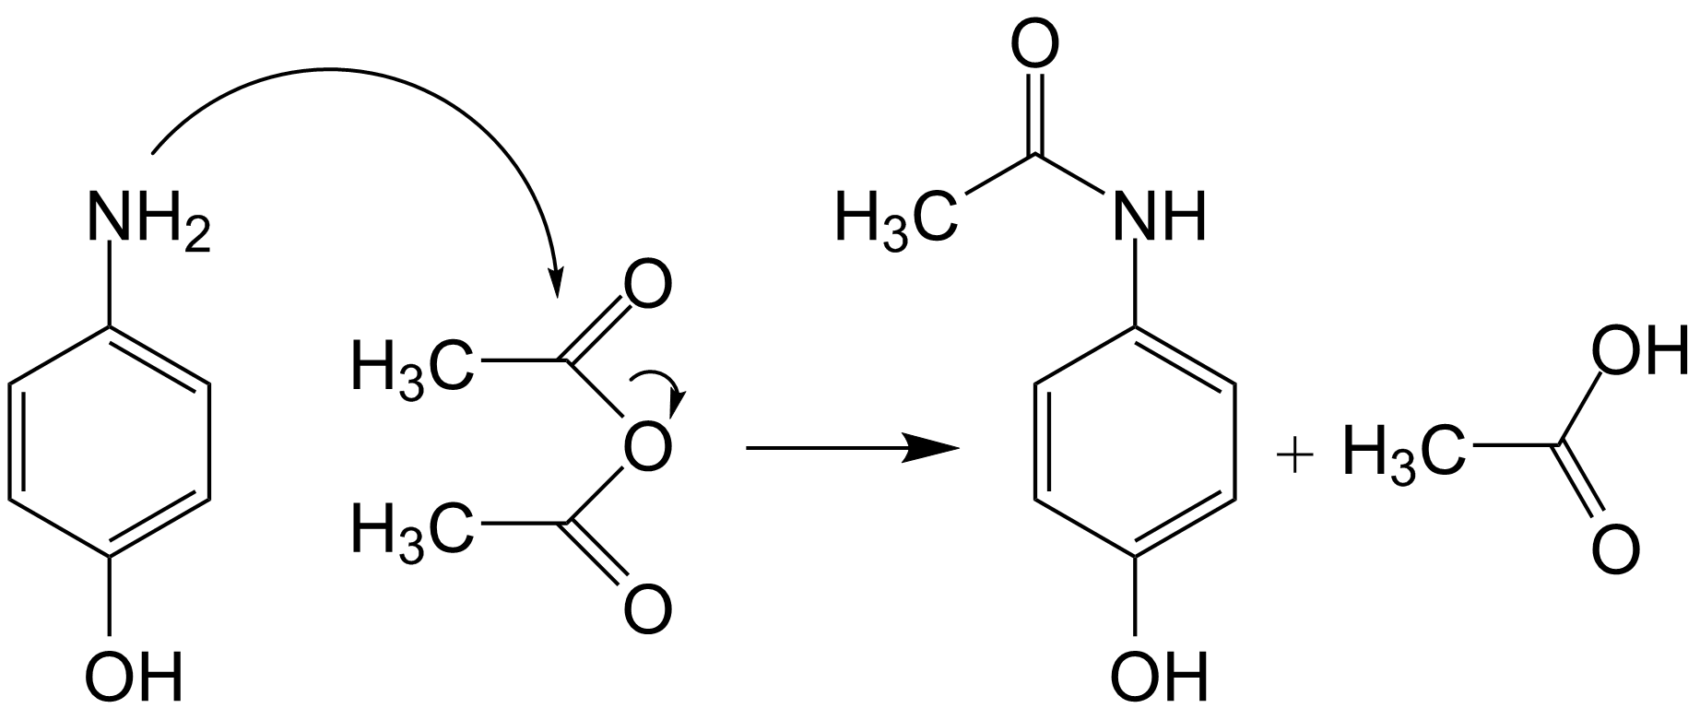 molecule paracetamol medicament